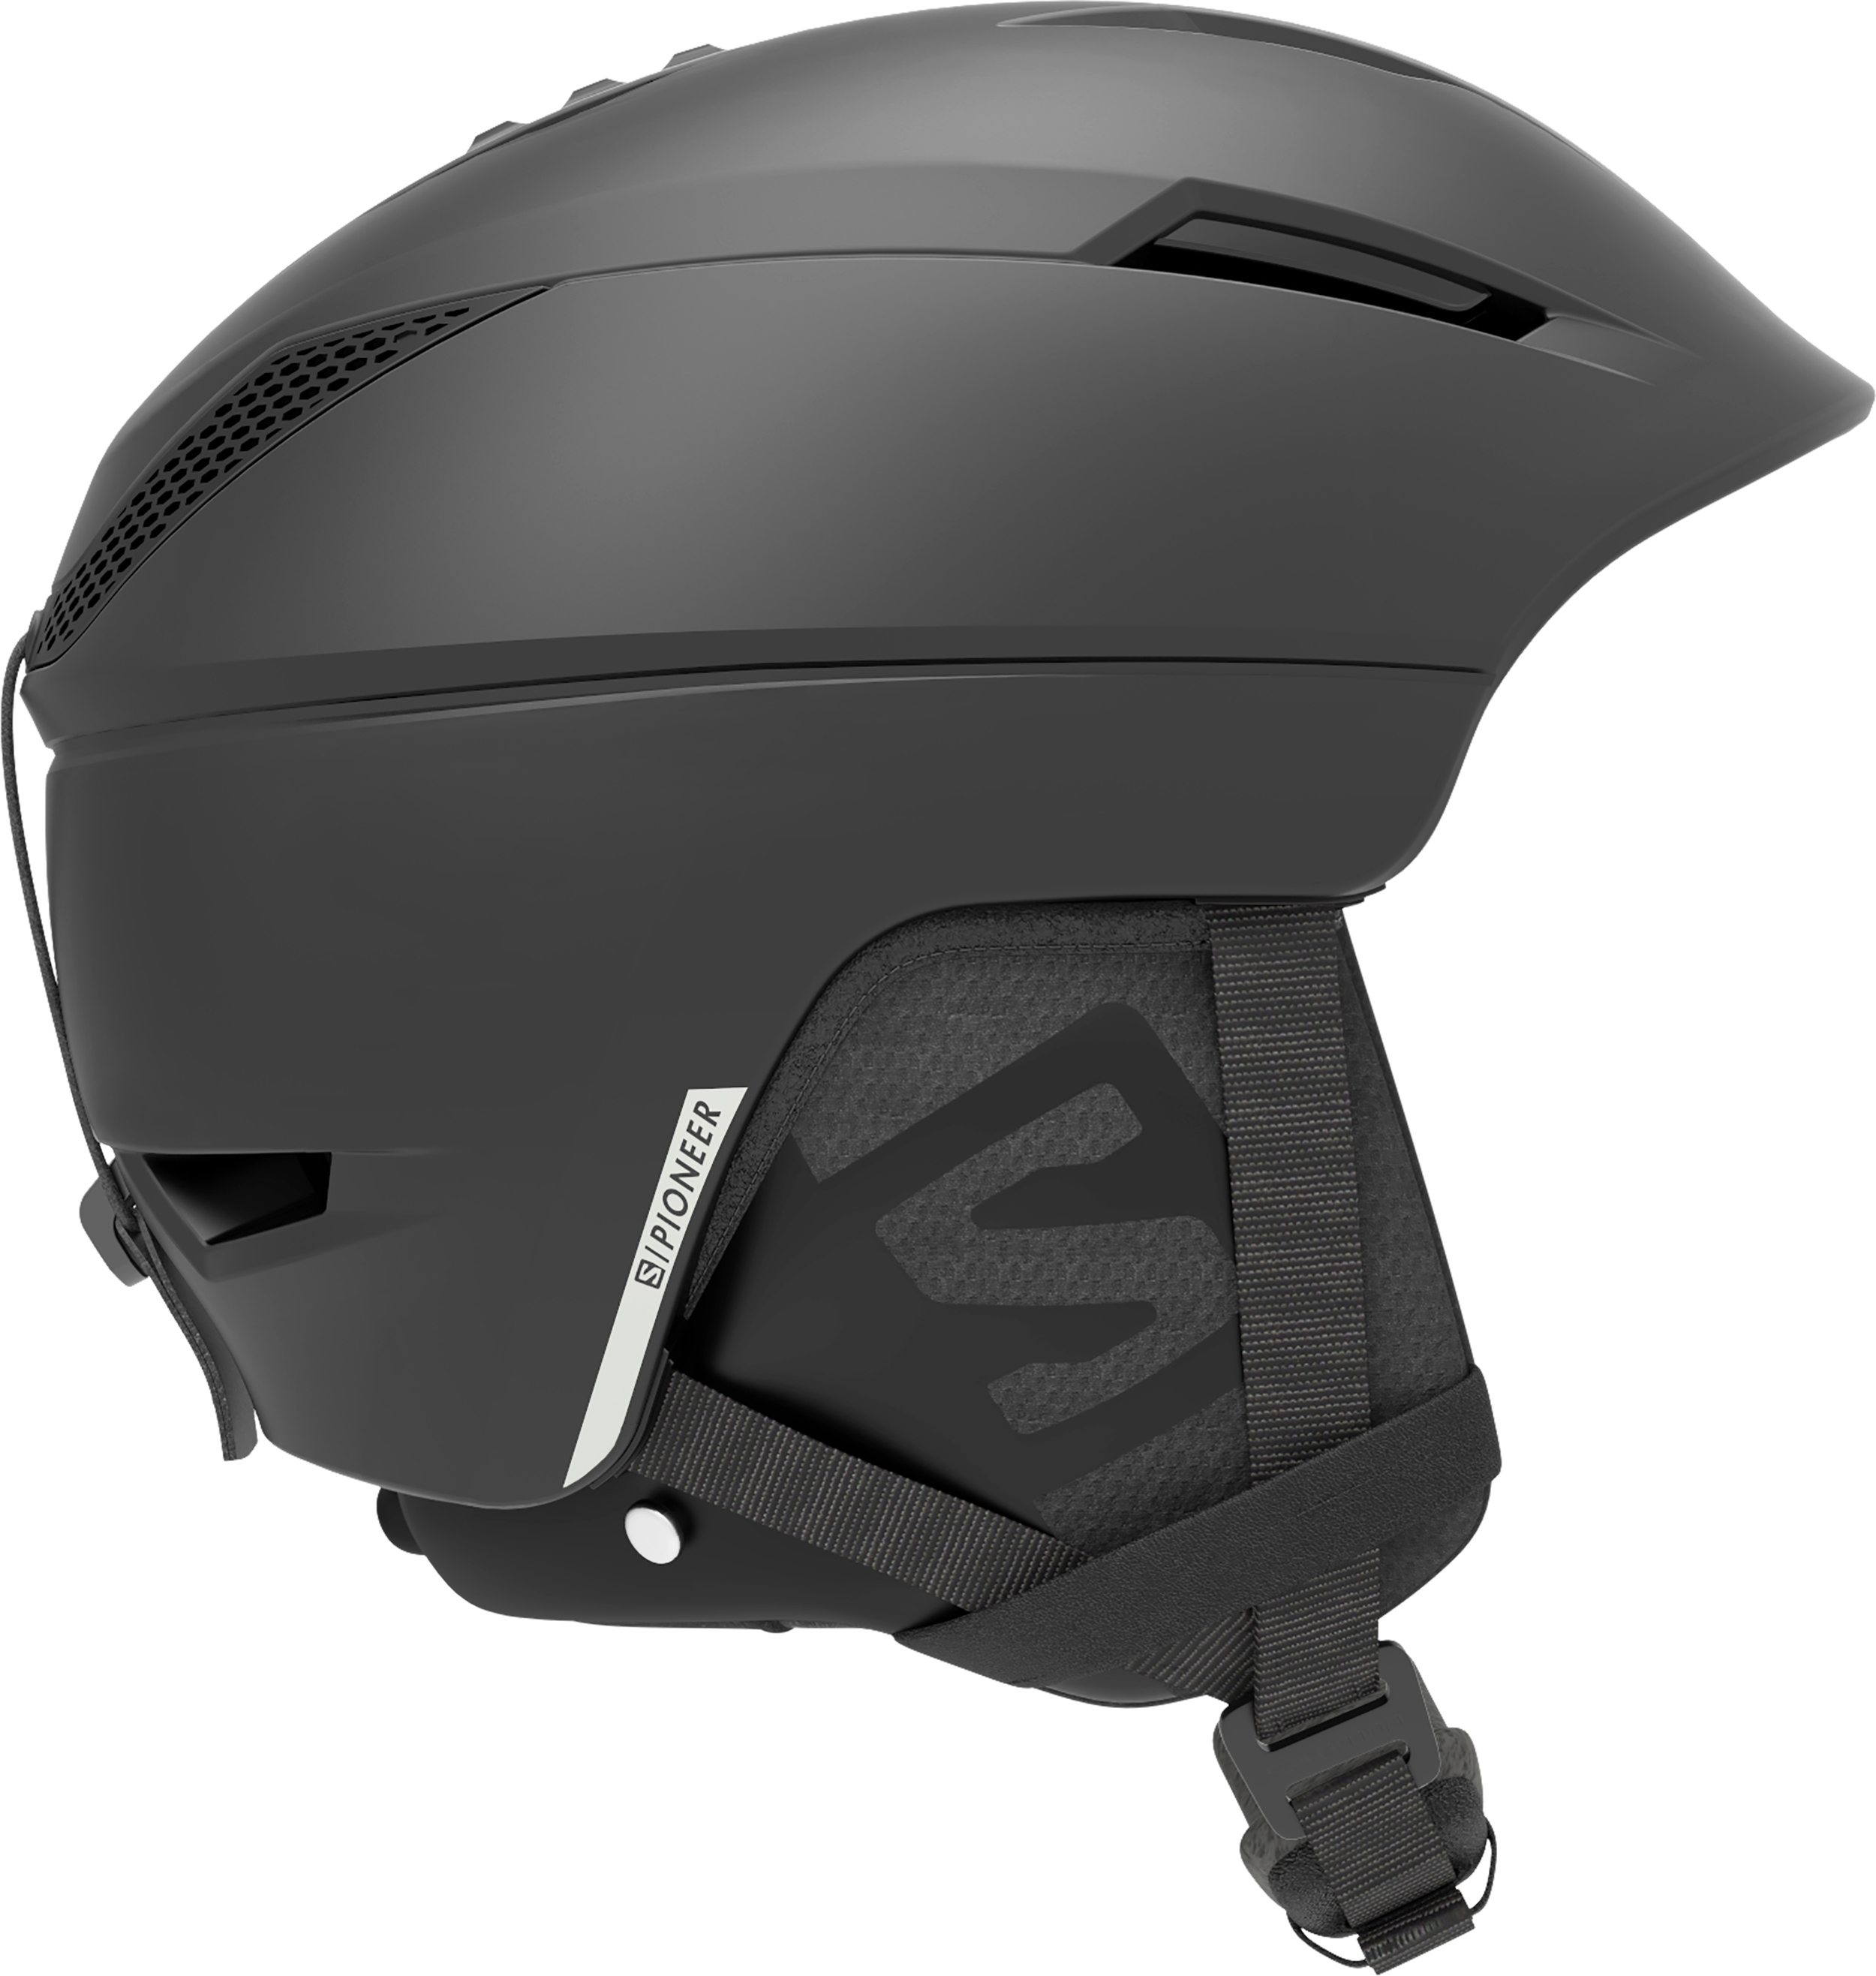 Salomon Pioneer C.Air MIPS Snowboard/Ski Helmet